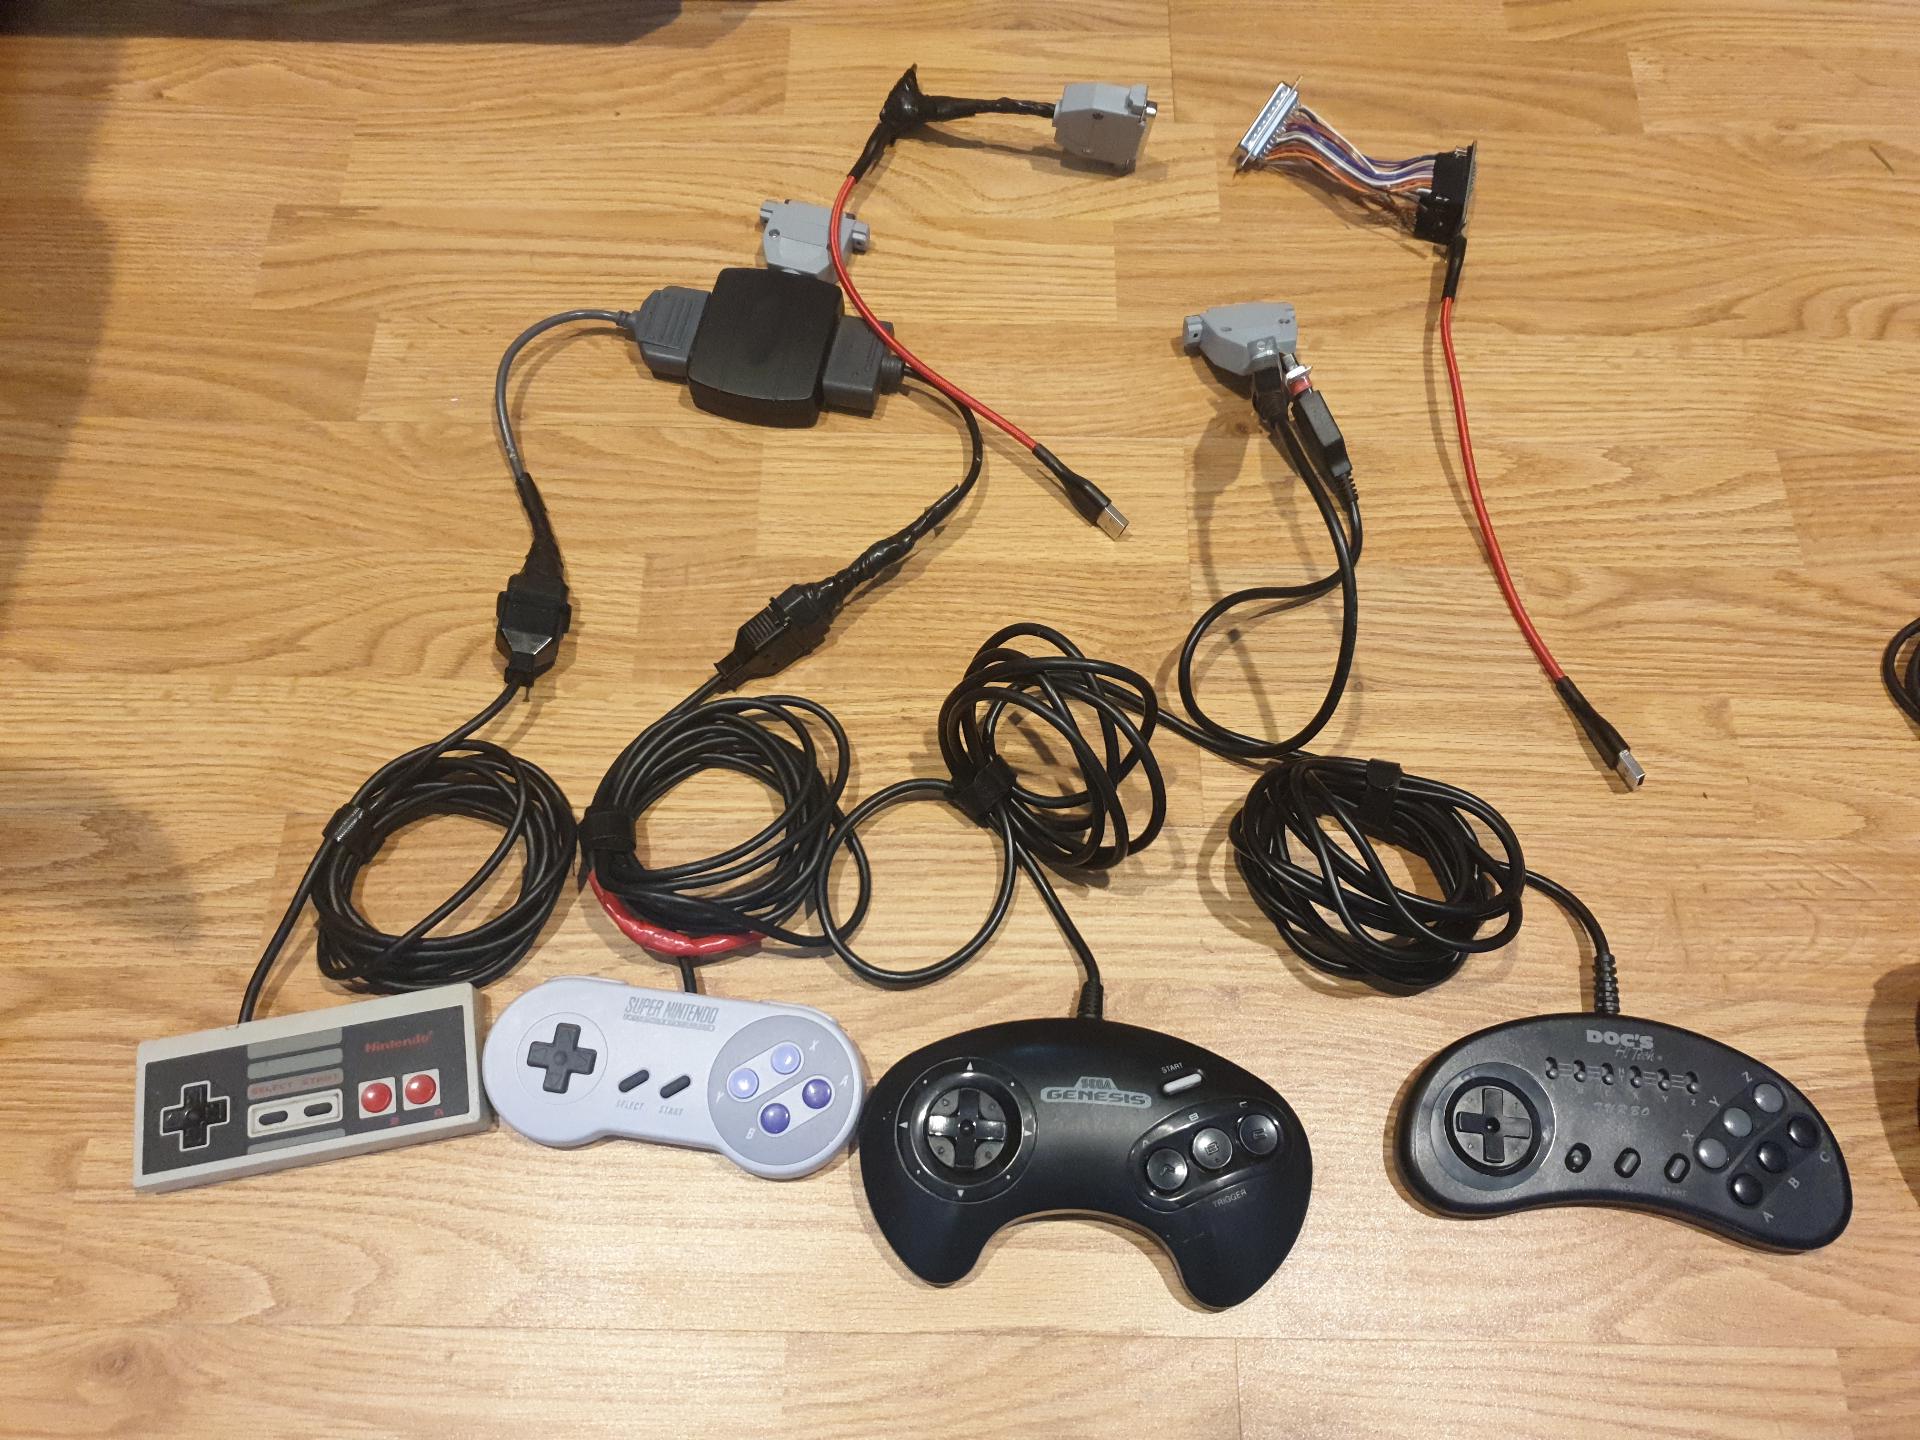 NES, SNES, Genesis 3, Genesis 6 controllers